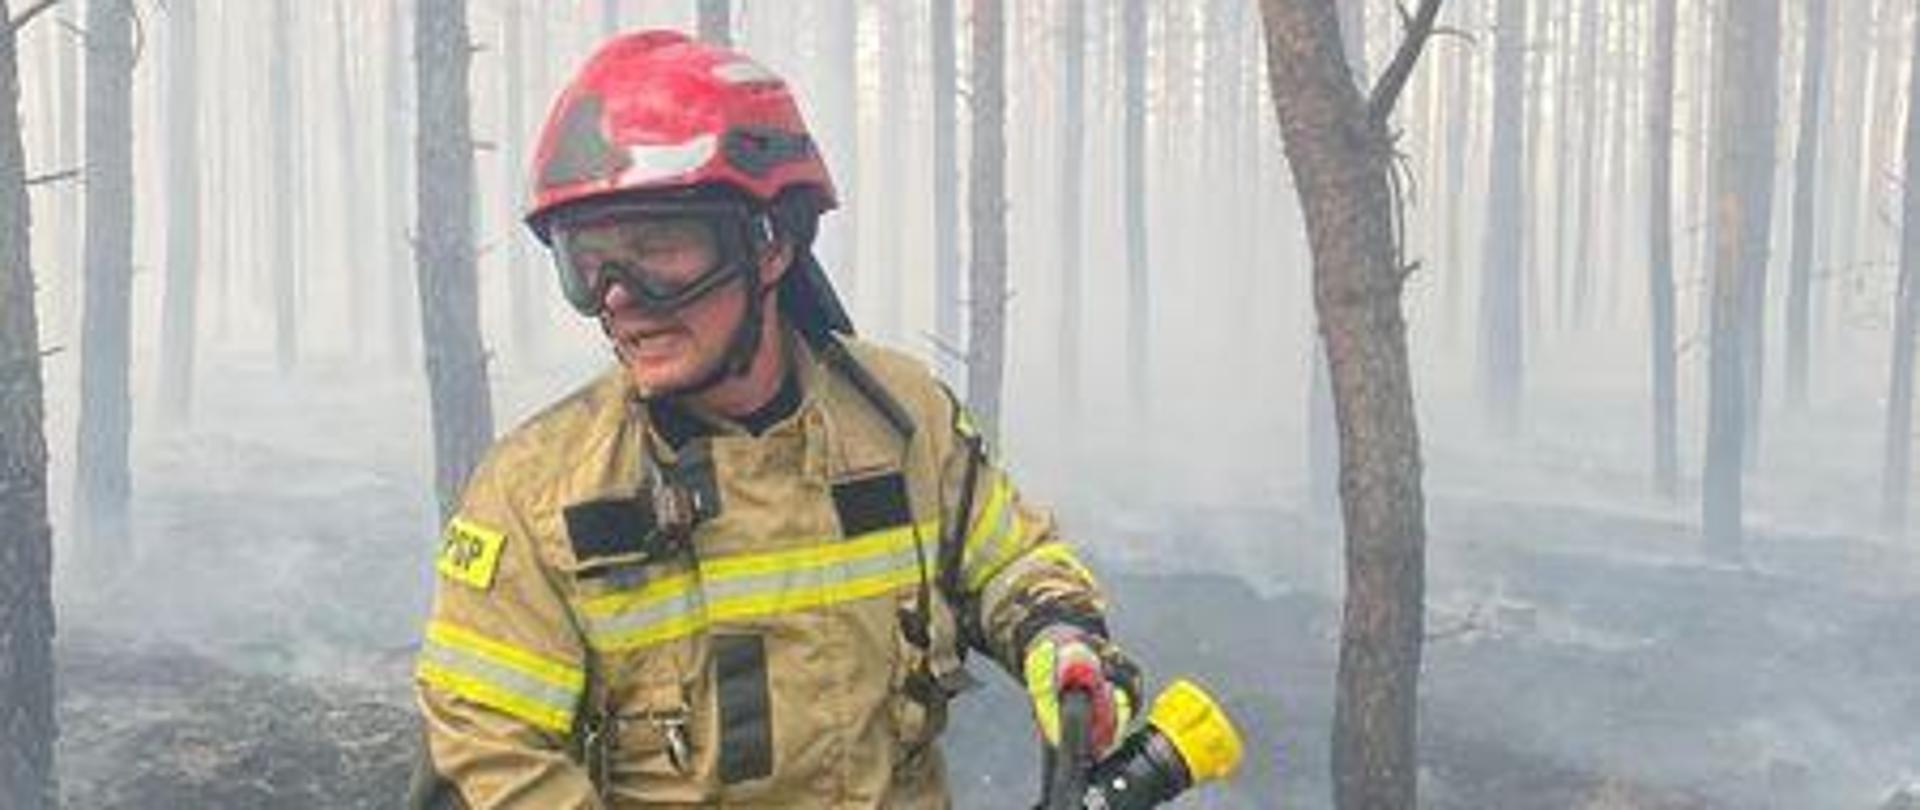 Strażak podczas gaszenia pożaru lasu